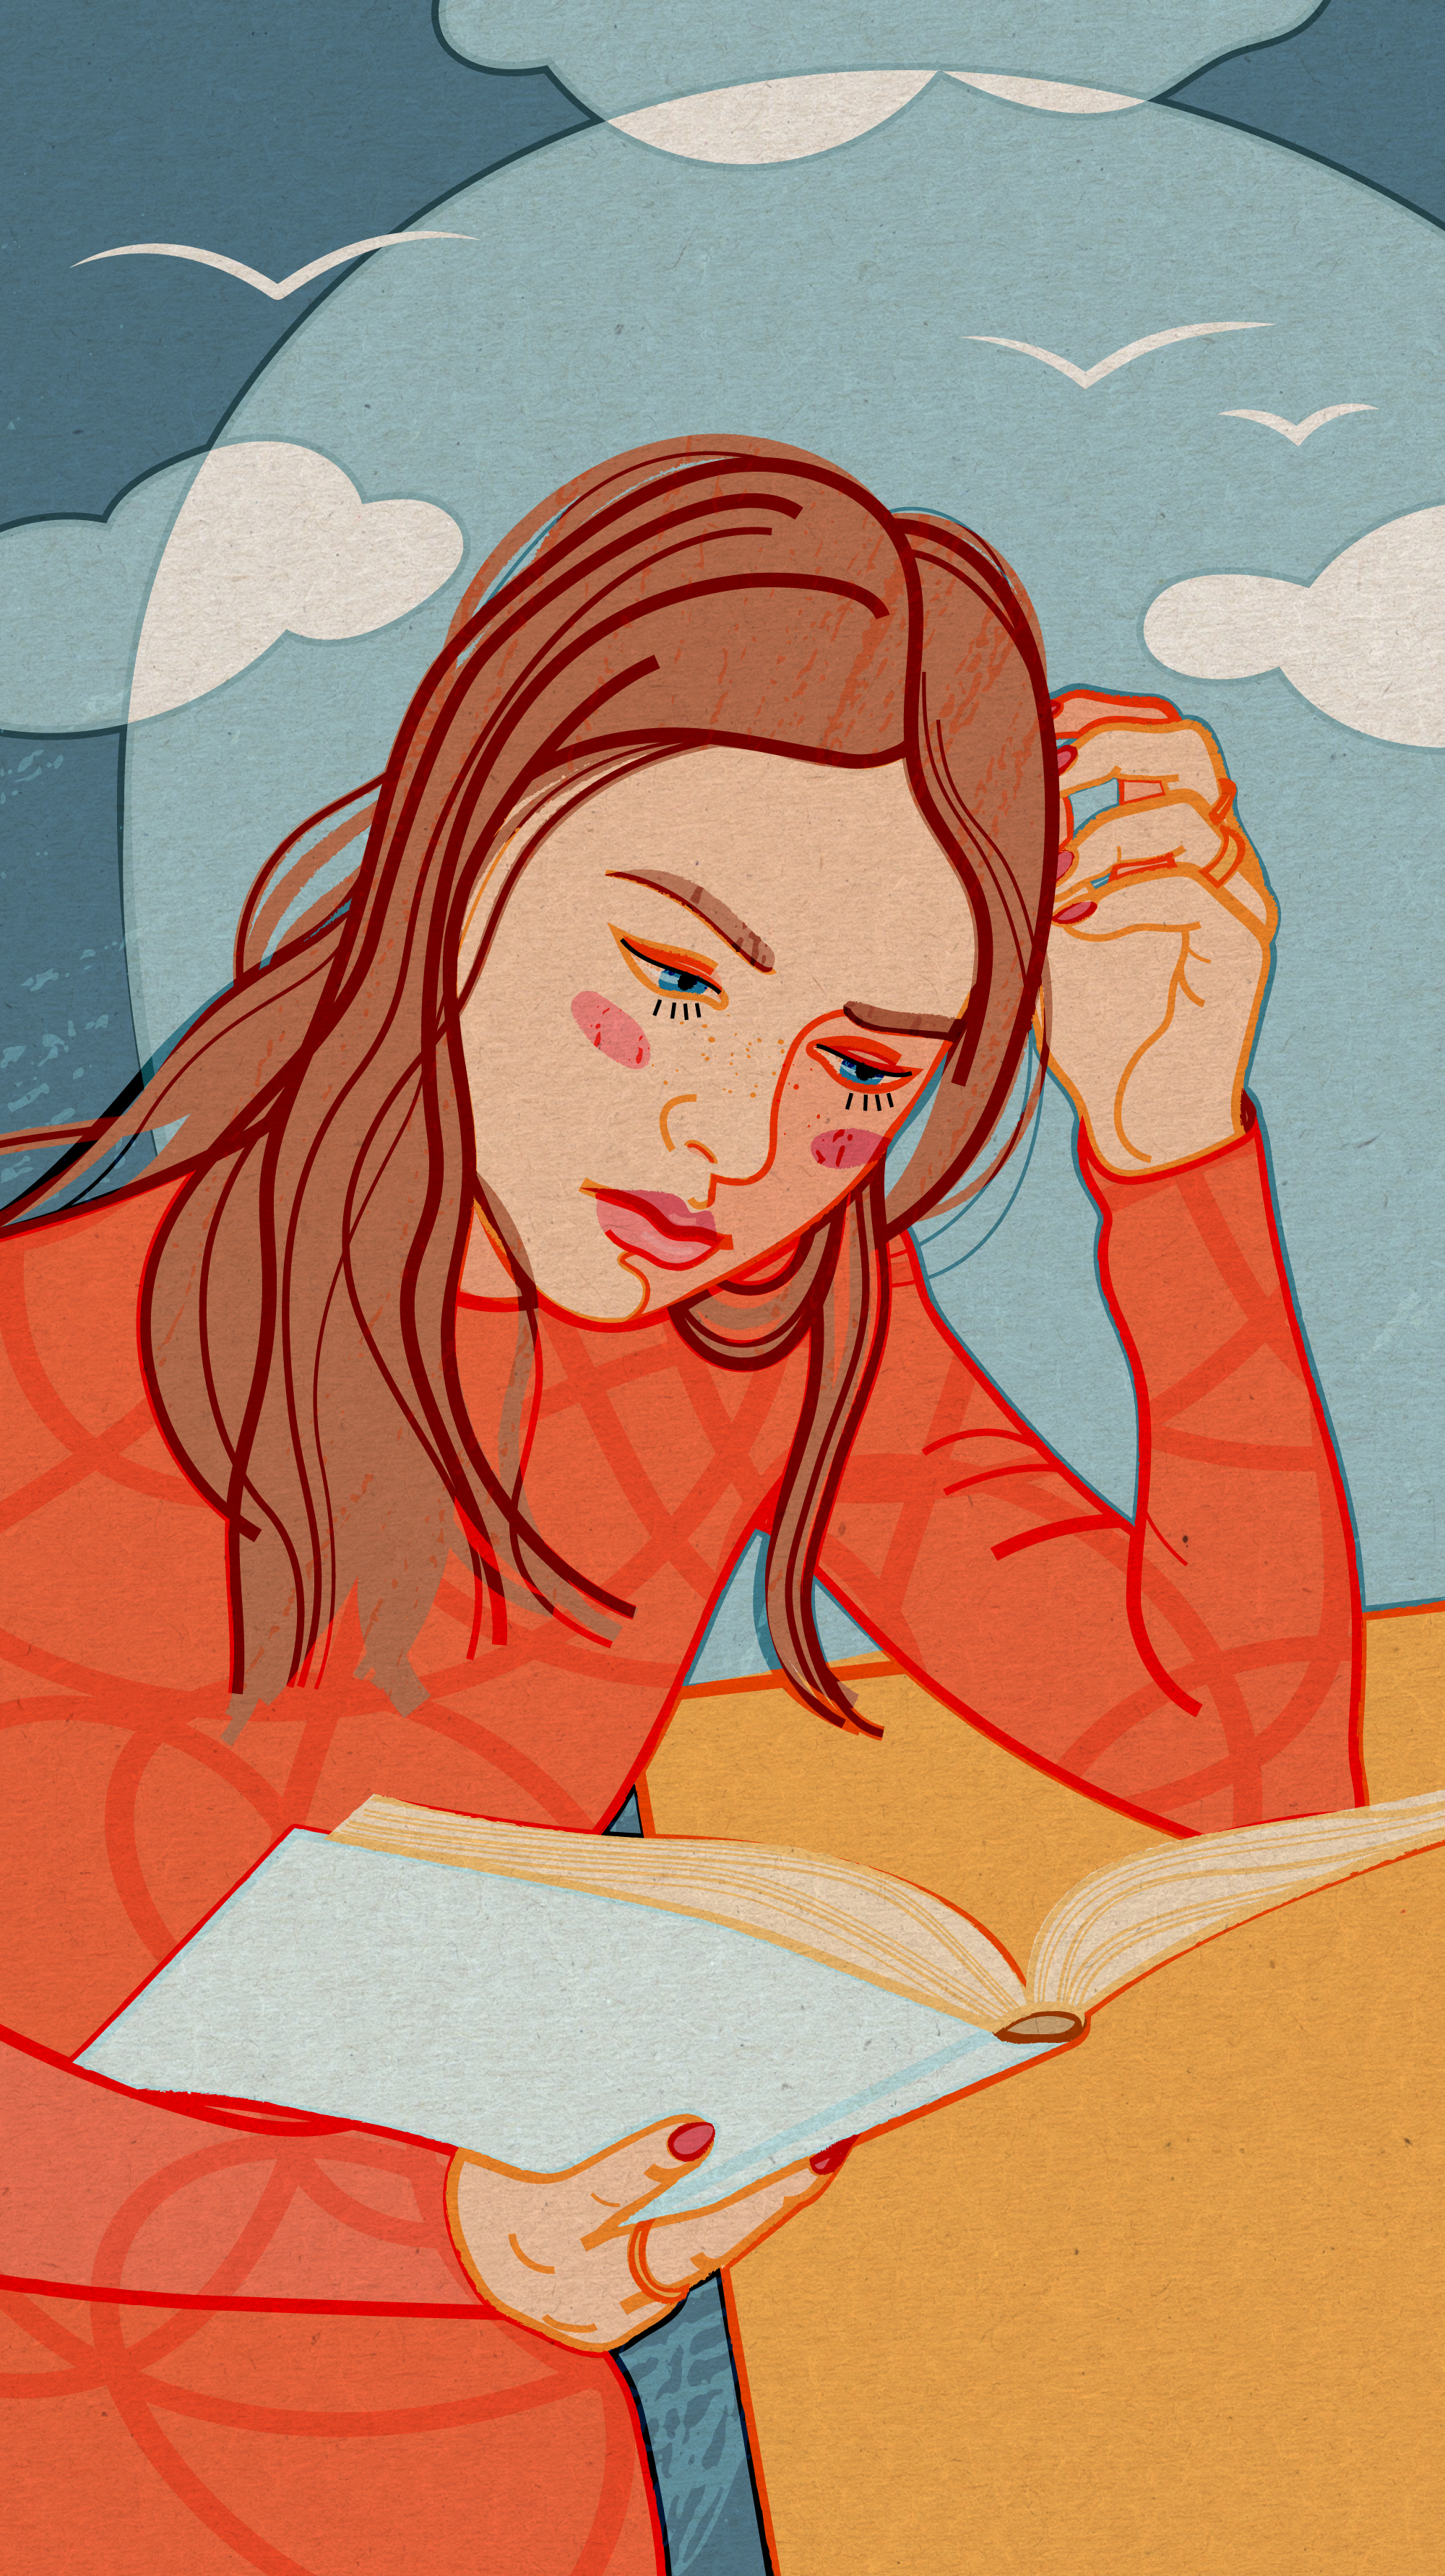 Читающие девушки восхитительны (осторожно, няшные фото внутри) | fitdiets.ru | Дзен